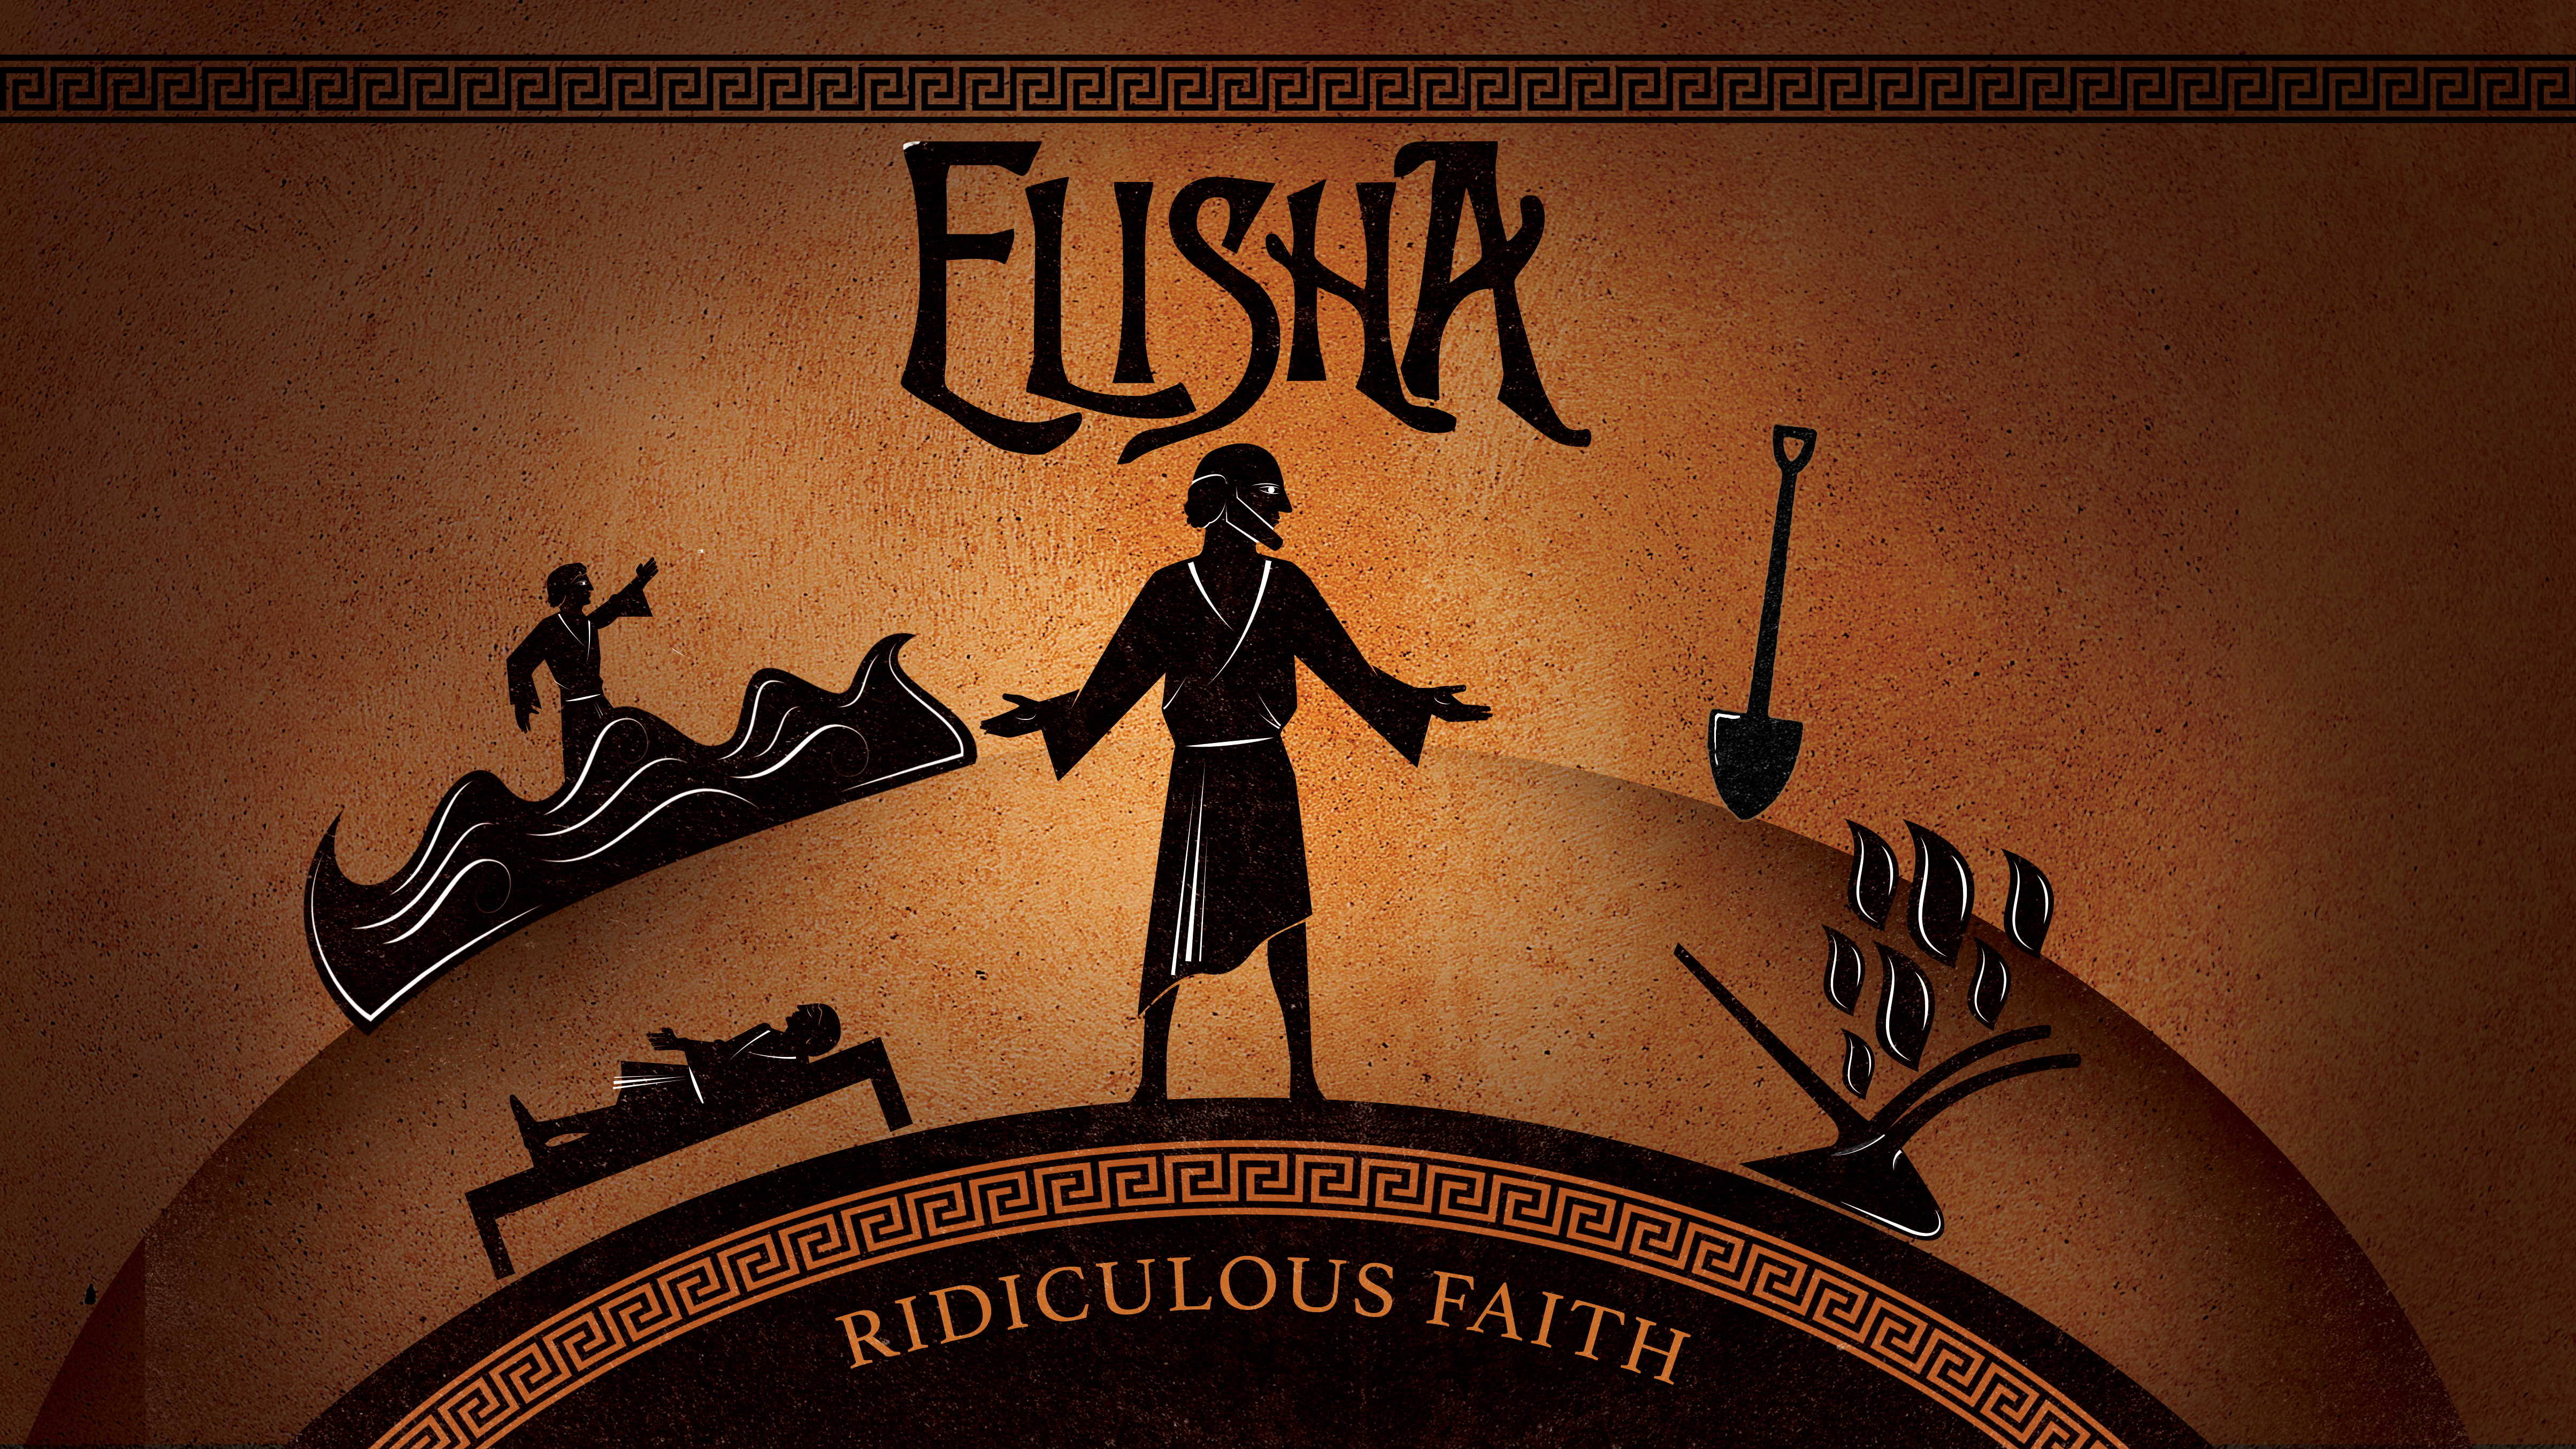 Elisha: Ridiculous Faith... Burn the Plows Image